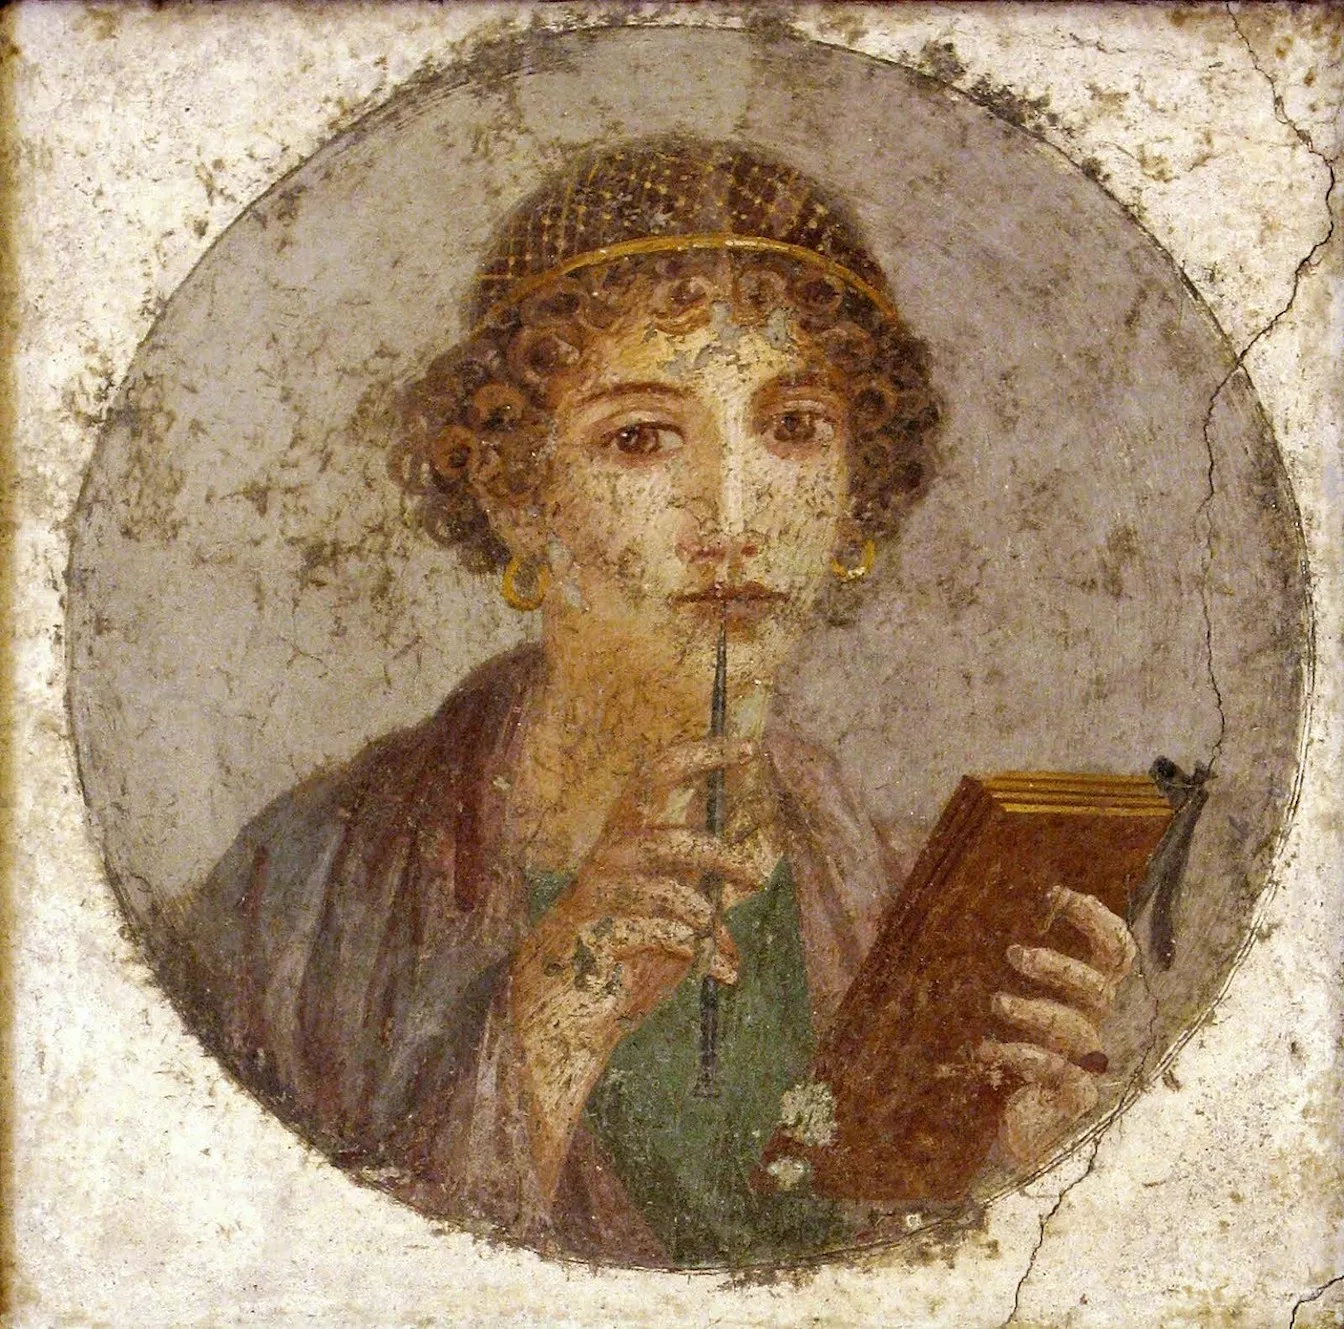 Representació de Safo amb un estilet romà i tauletes de cera